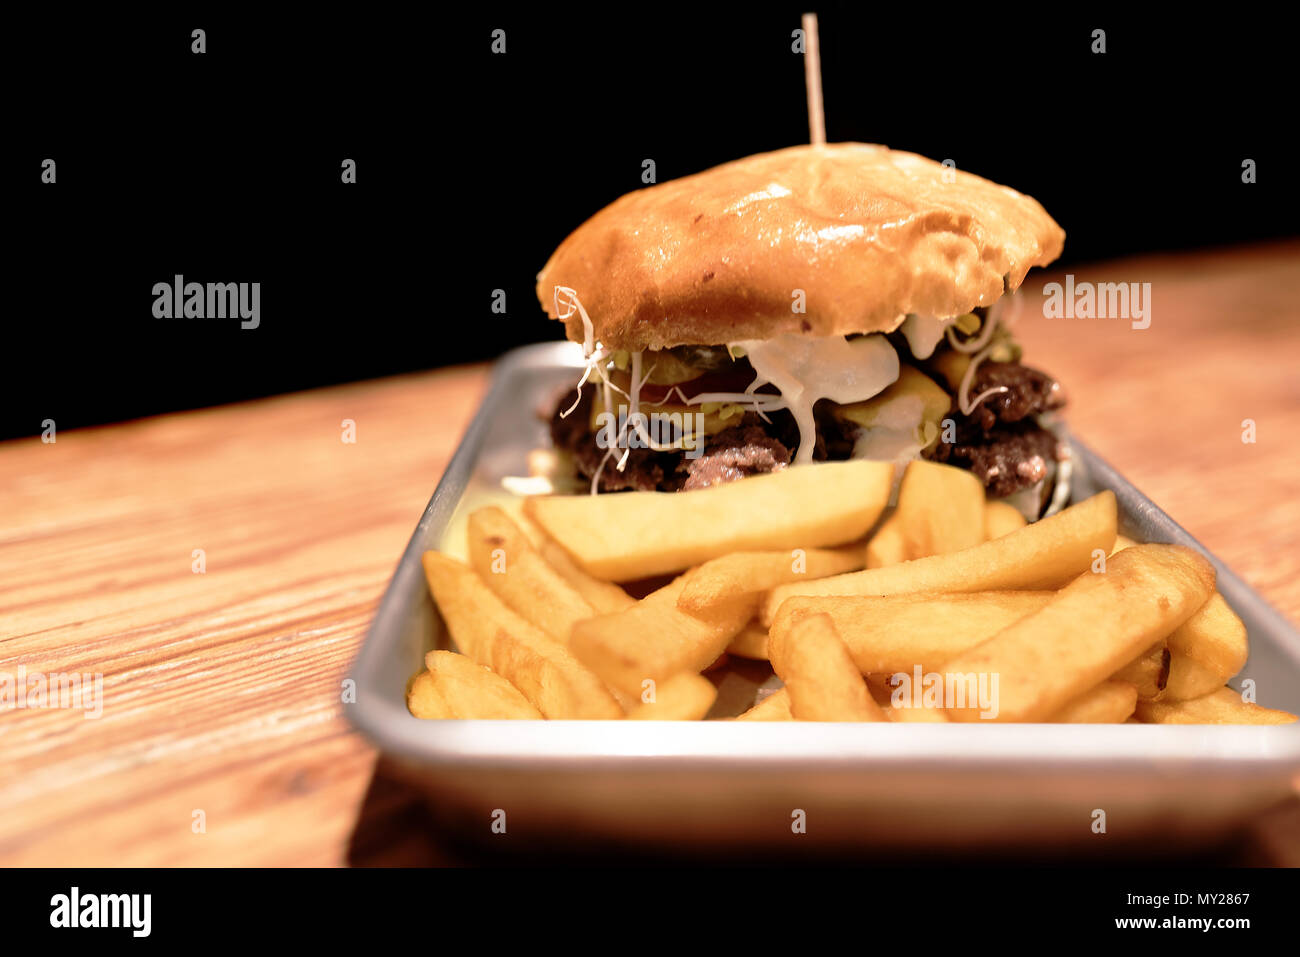 Grandi hamburger e patatine fritte sulla piastra metallica sulla tavola in legno rustico contro uno sfondo scuro Foto Stock